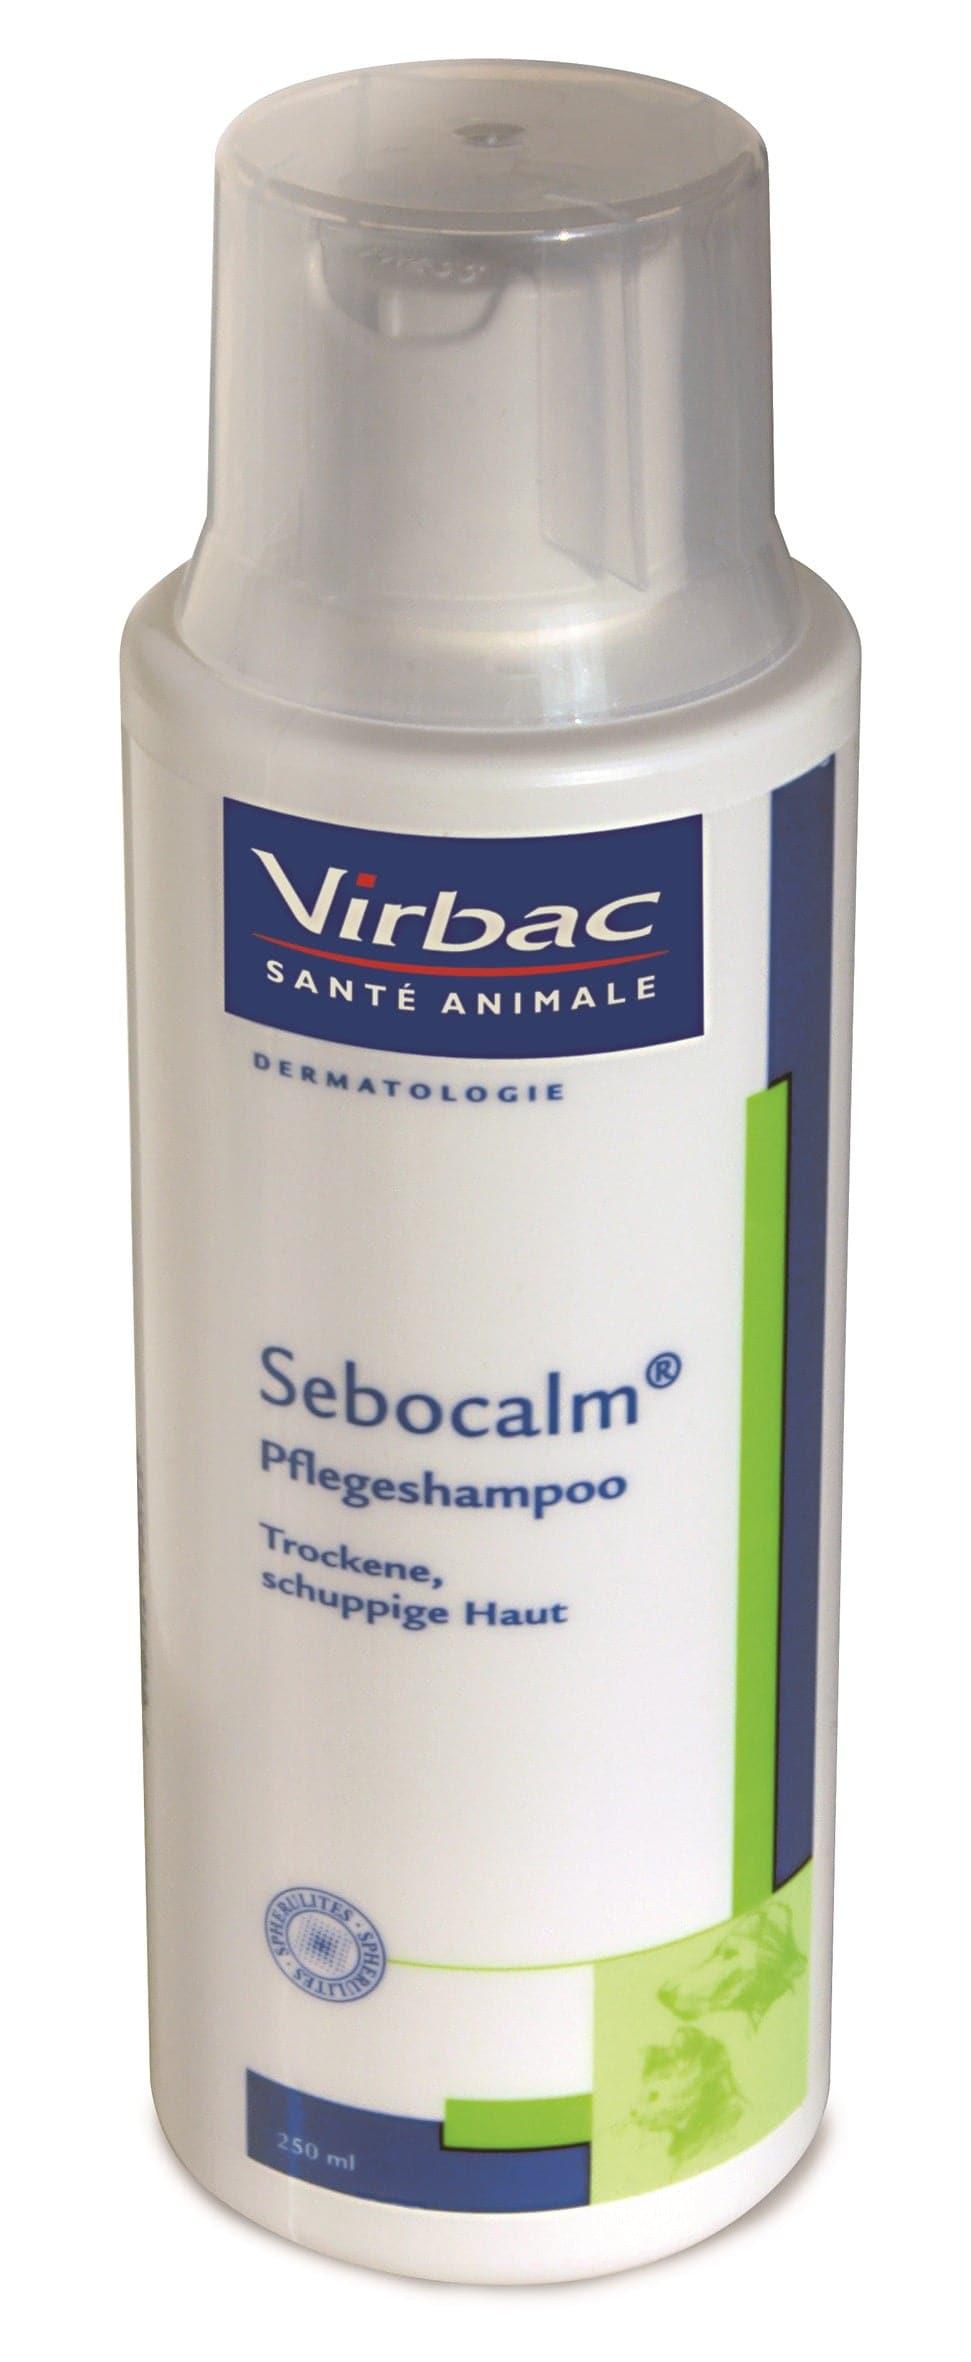 Sebocalm Shampoo - Virbac - Darreichungsform:Shampoo, Pflegeprodukte:Hautpflege/Shampoo, Tierart:Hund, Tierart:Katze - Marigin AG Onlineshop für Tierbedarf